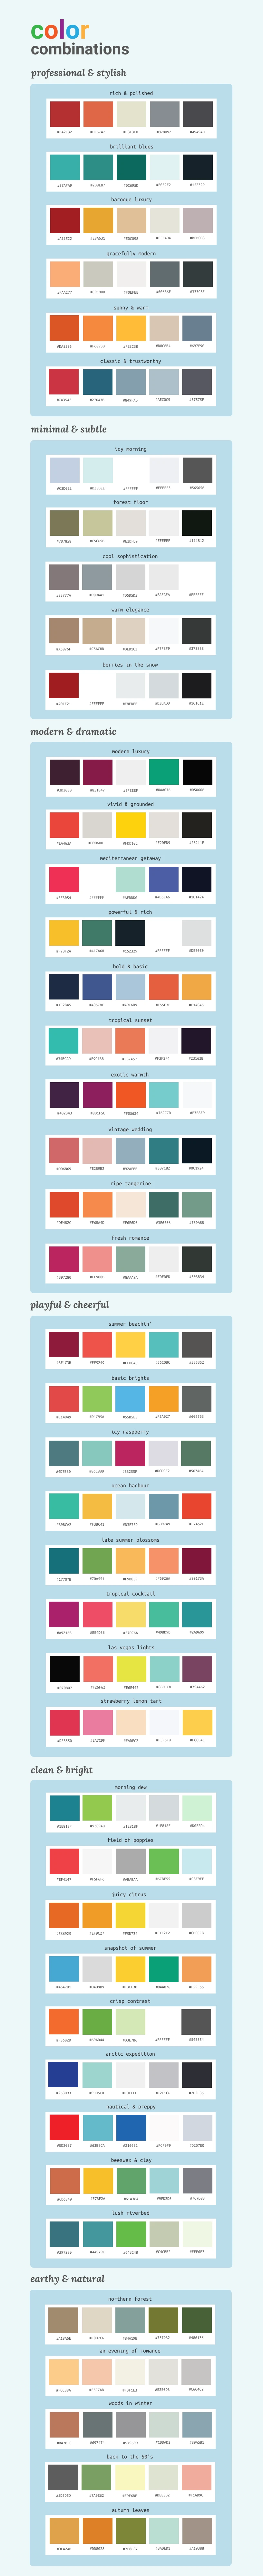 Color Palette Cards Mock-up  Color palette, Mockup templates, Mockup design